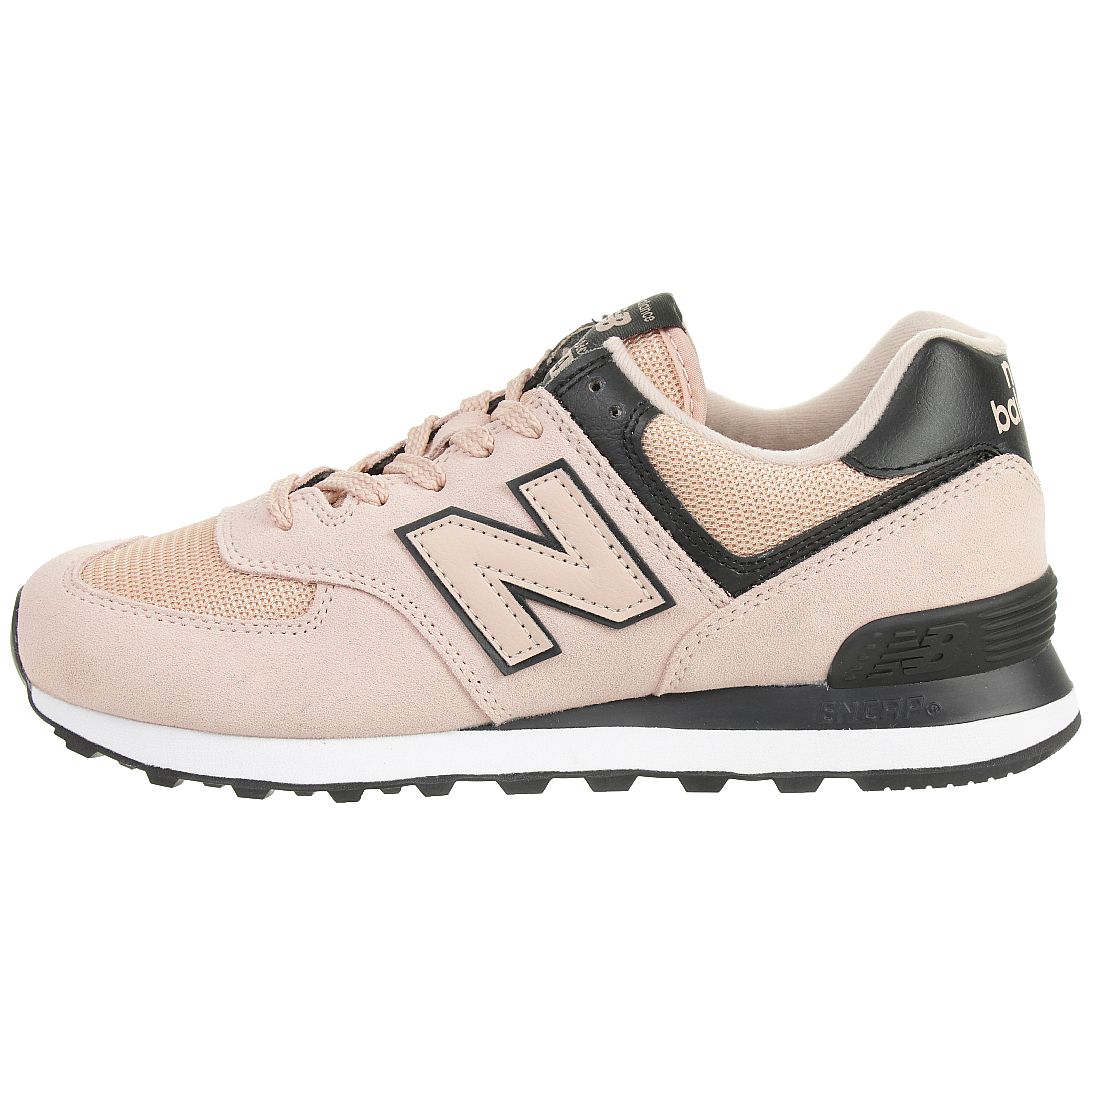 New Balance WL574 WEG Classic Sneaker Damen Schuhe pink 